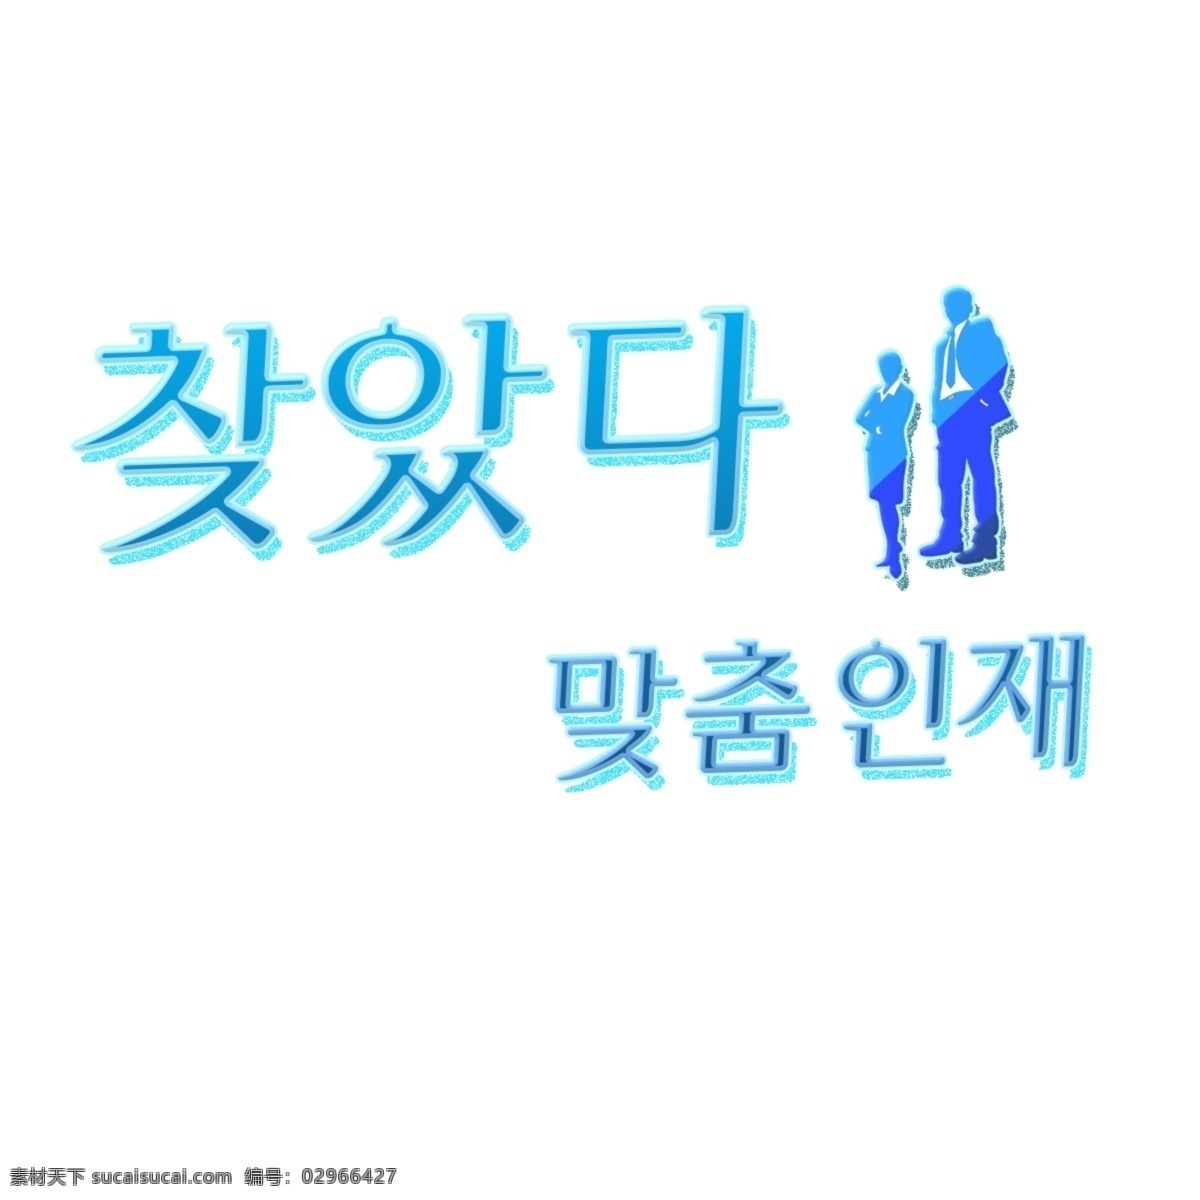 韩国 字体 找到 合适 人才 白色和蓝色 现场 招聘 天赋 韩国人 字形